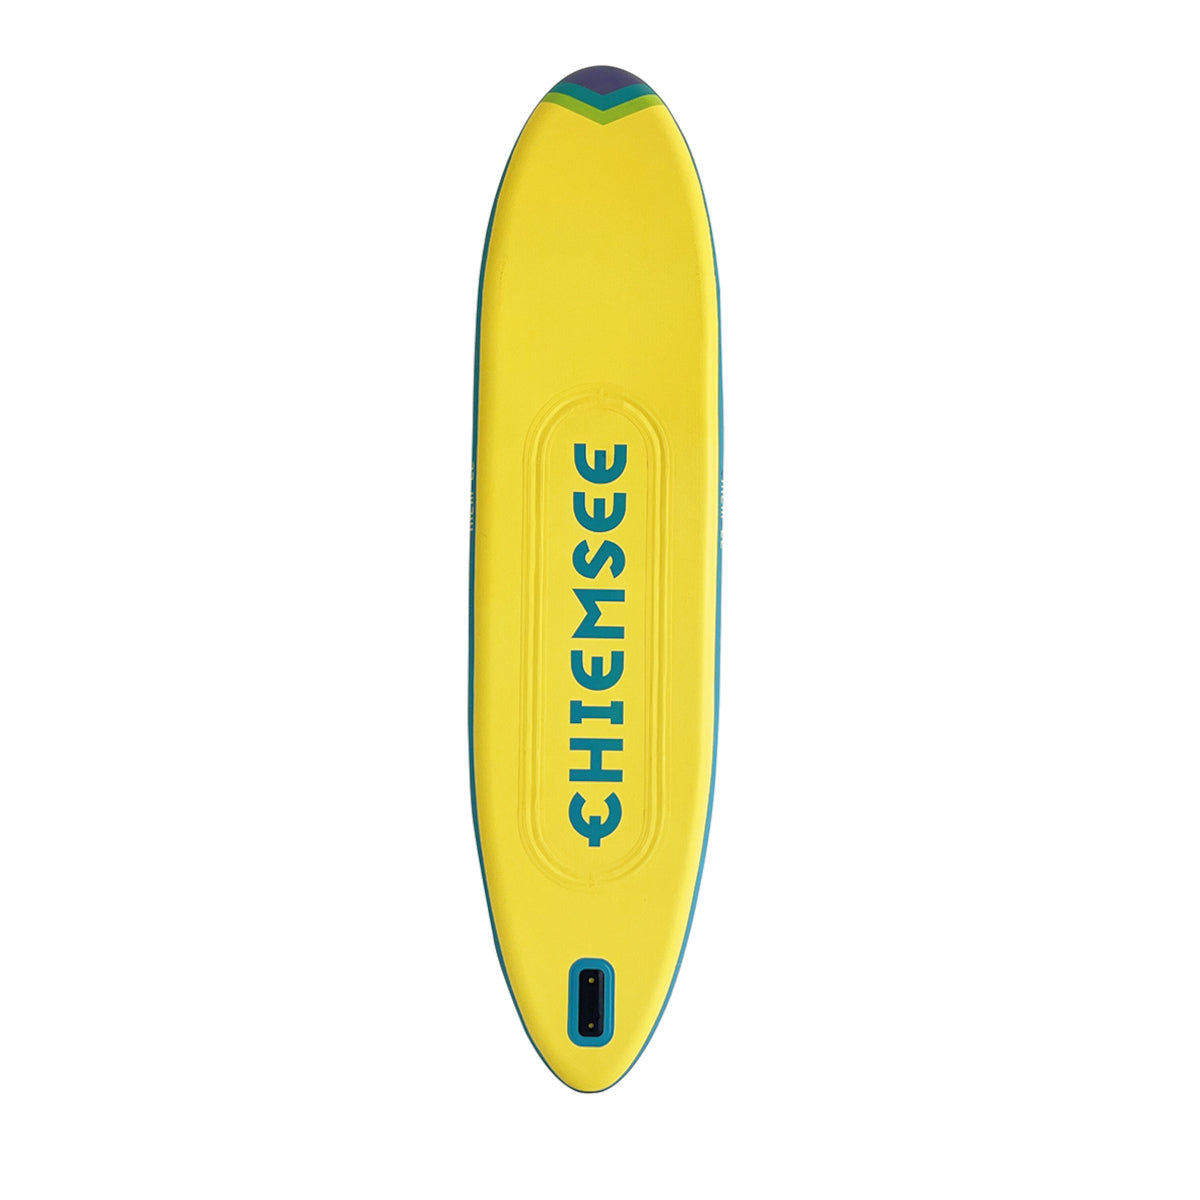 Chiemsee SUP-Set inkl. Board, Paddel, Pumpe, Leash & Rucksack (grün/blau)